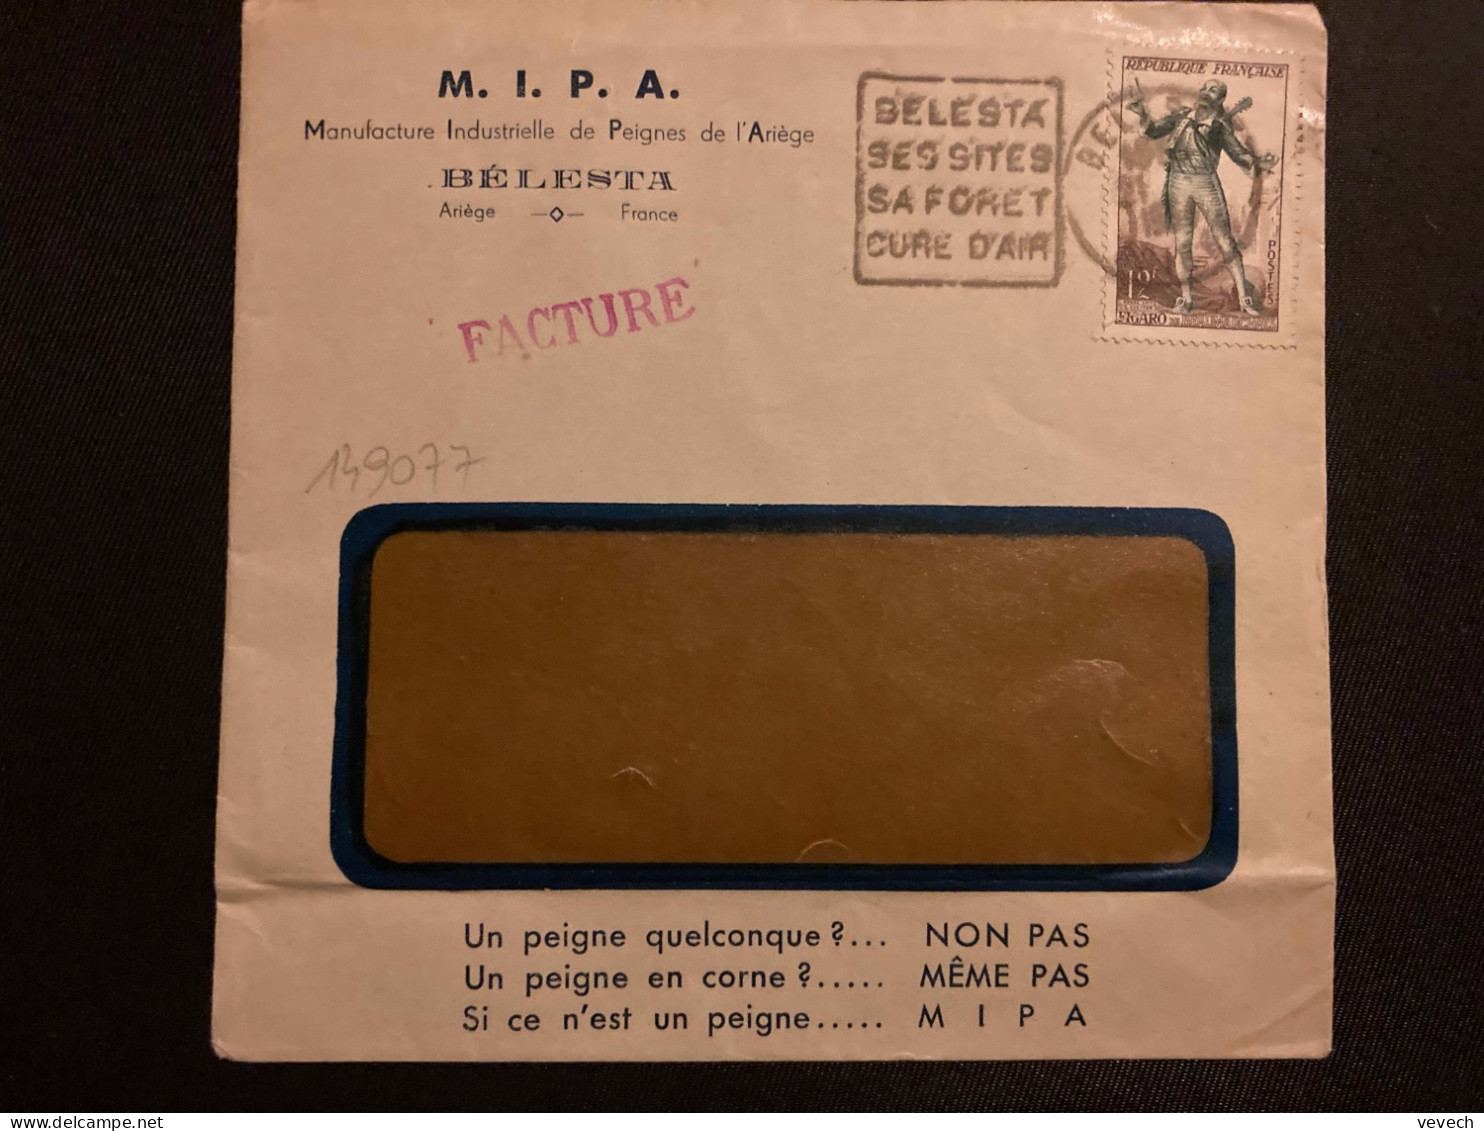 LETTRE MIPA PEIGNES DE L'ARIEGE TP FIGARO 12F OBL. DAGUIN 21-? 1954 BELESTA ARIEGE (09) SES SITES SA FORET CURE D'AIR - Mechanische Stempels (varia)